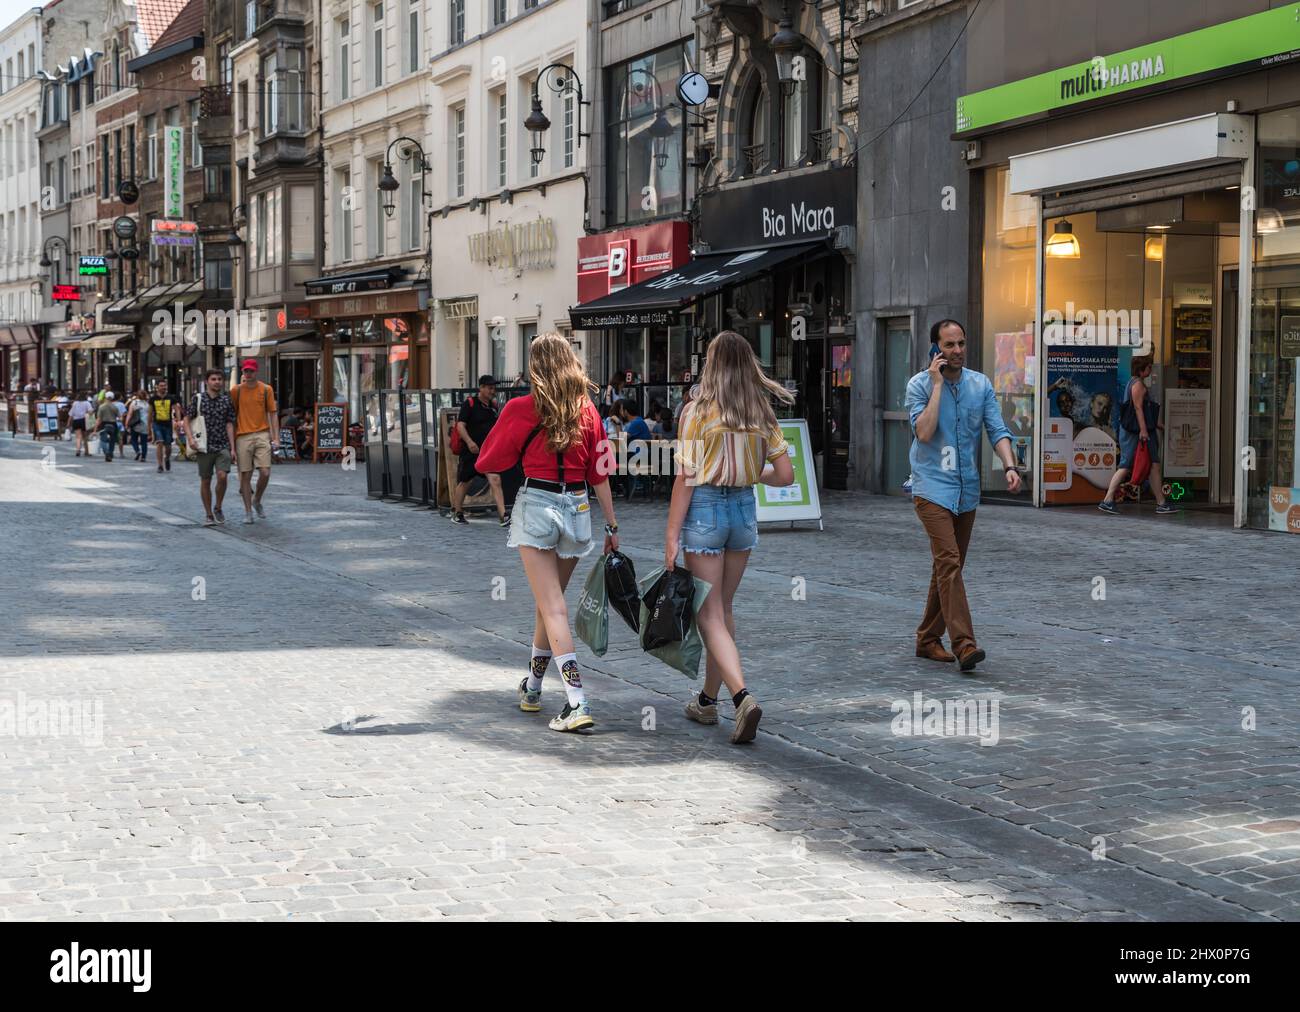 Ciudad de Bruselas - Bélgica - 25 2019, Adolescentes chicas de moda en ropa de verano caminando por las calles comerciales alrededor de la Avenida Anspach Fotografía de stock -